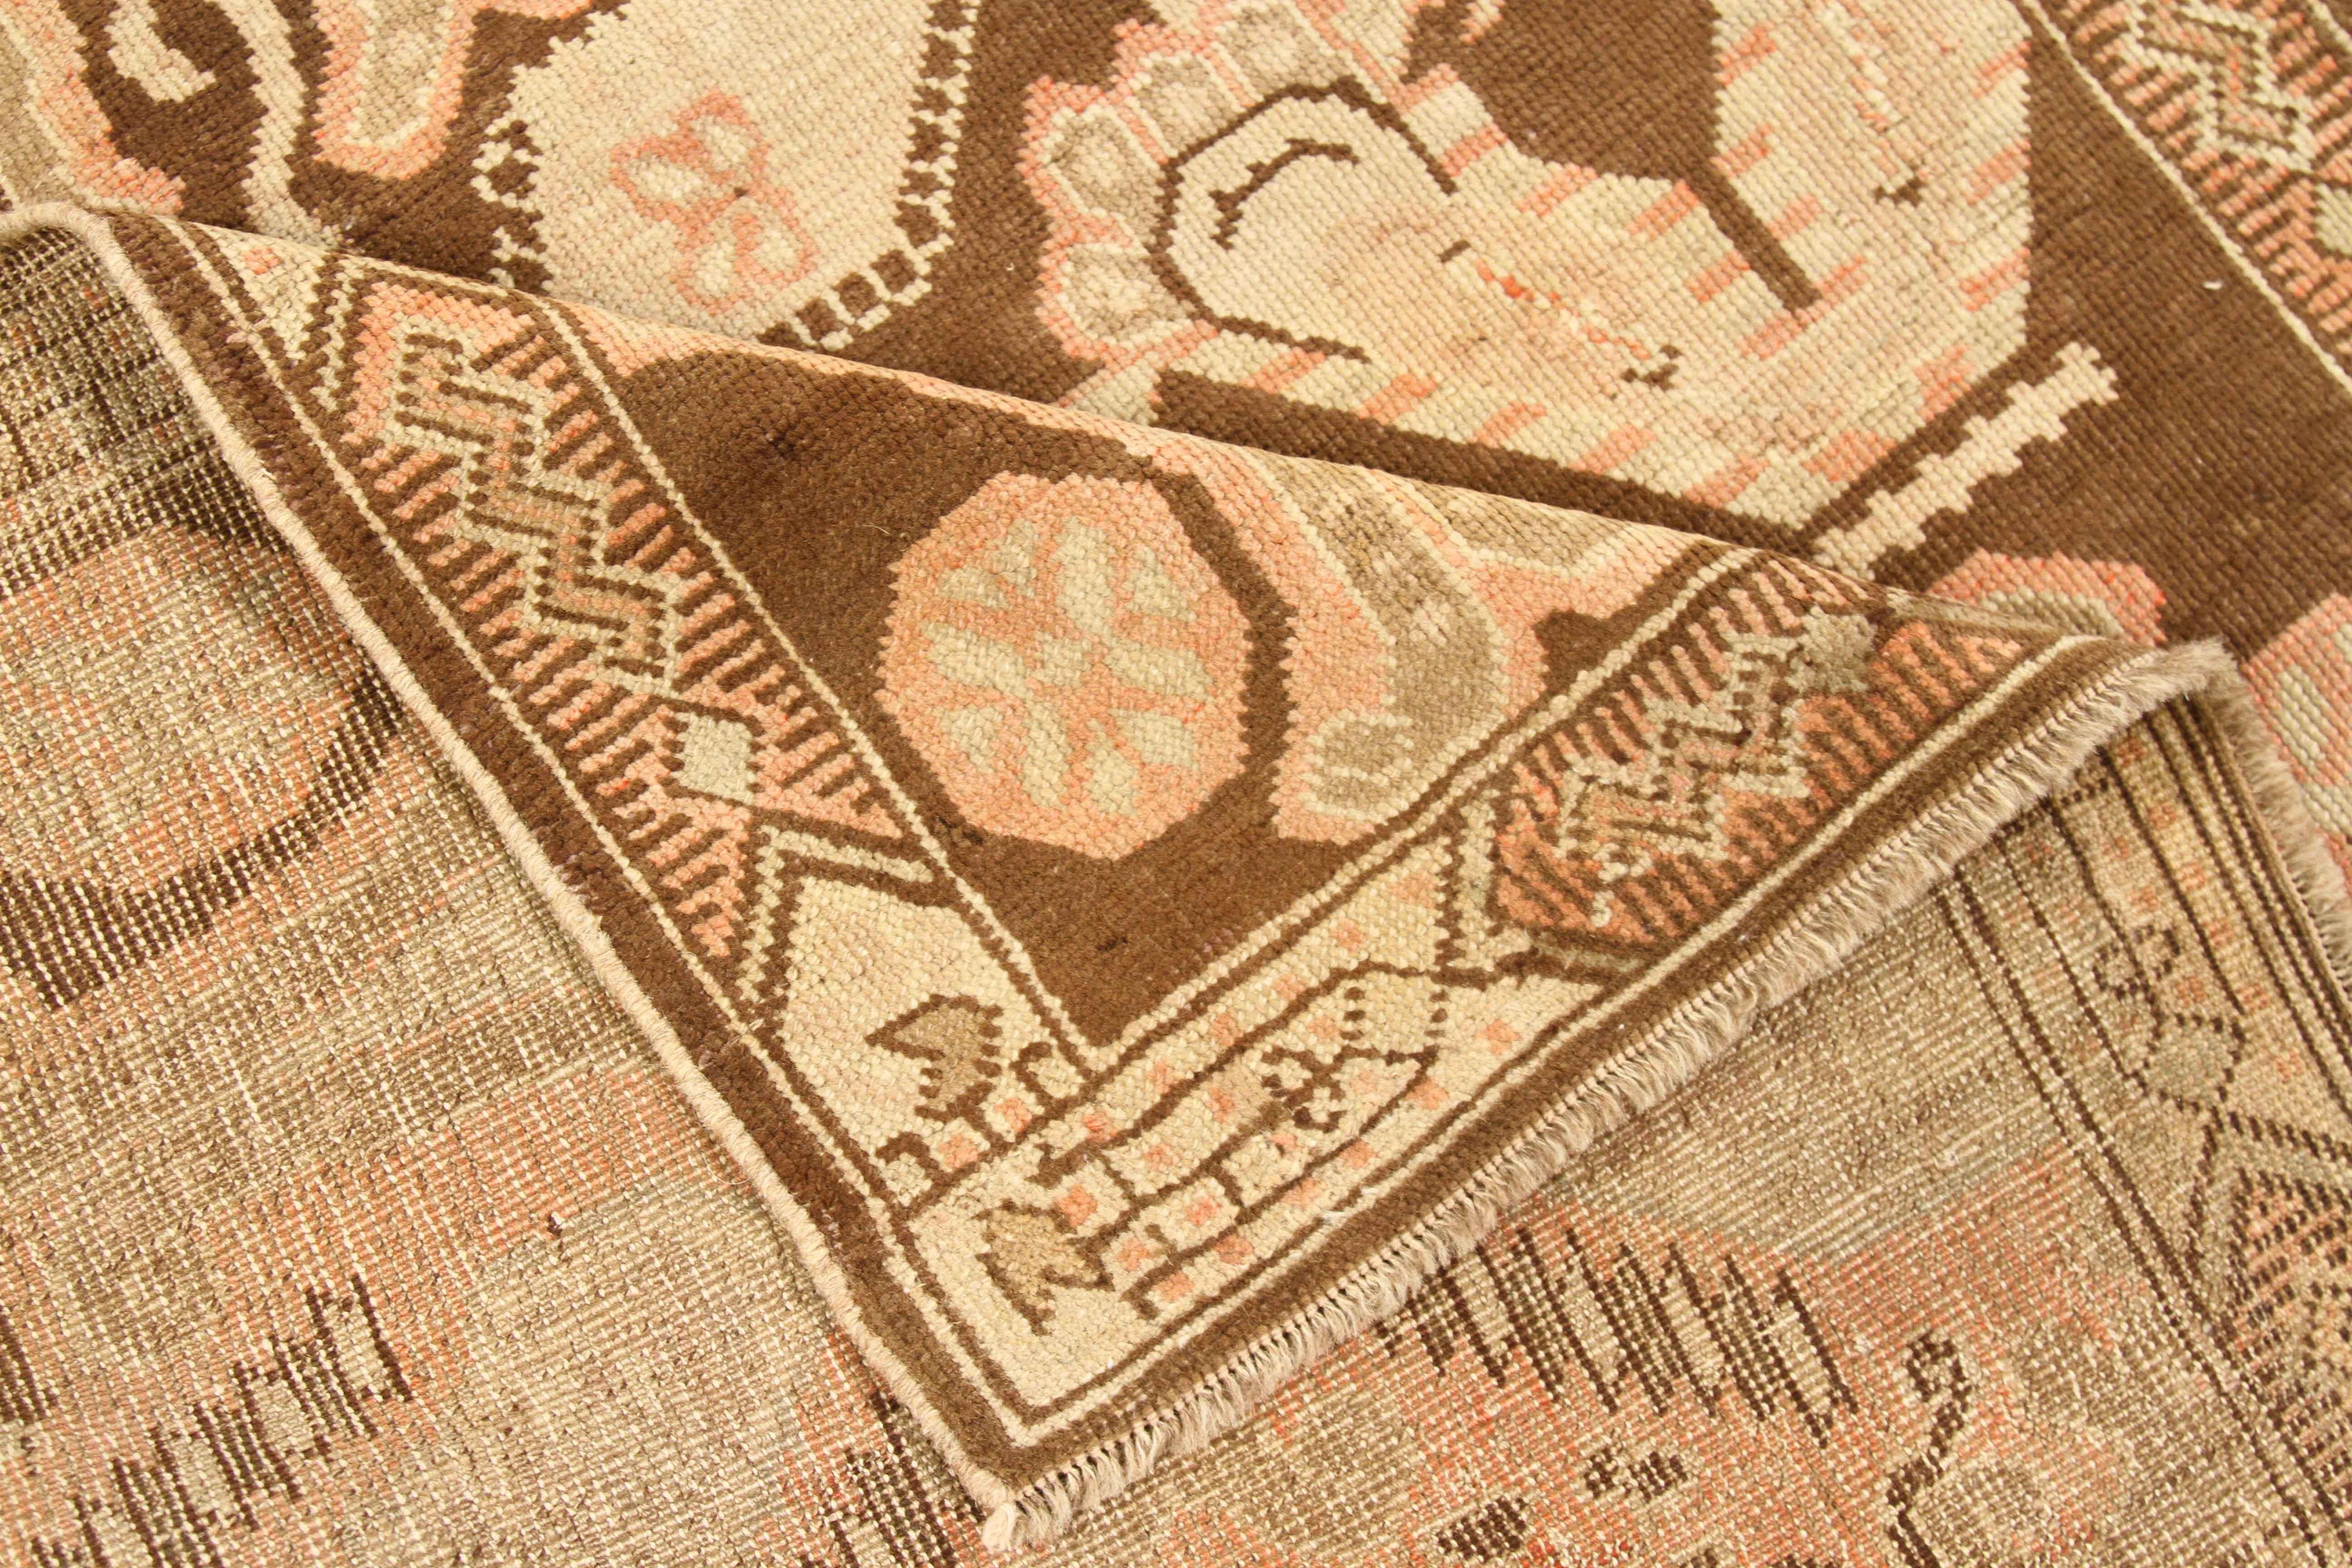 Tapis ancien en laine filée à la main et teintures organiques. Le tissage et le design suivent les motifs du Karabagh, qui représentent généralement des scarabées et des médaillons ornés. En ce qui concerne les couleurs, on y trouve du beige, du